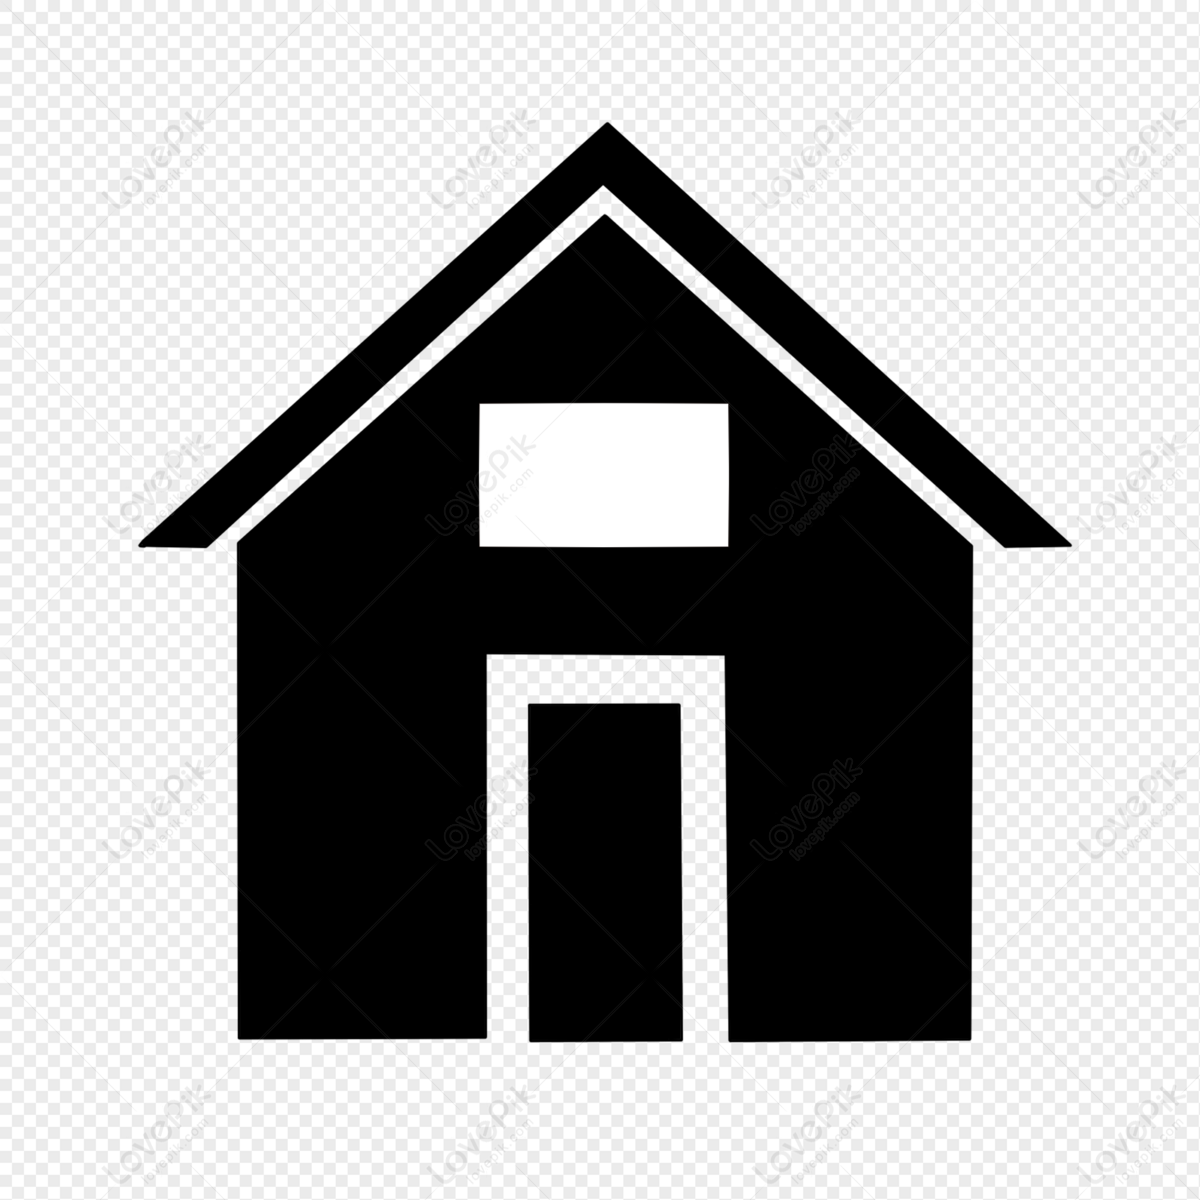 House Icon PNG: Với House Icon PNG, bạn có thể dễ dàng thêm hình ảnh nhà vào các thiết kế của mình một cách tiện lợi và nhanh chóng. Hình ảnh này sẽ giúp gia tăng tính chuyên nghiệp cho các thiết kế của bạn.